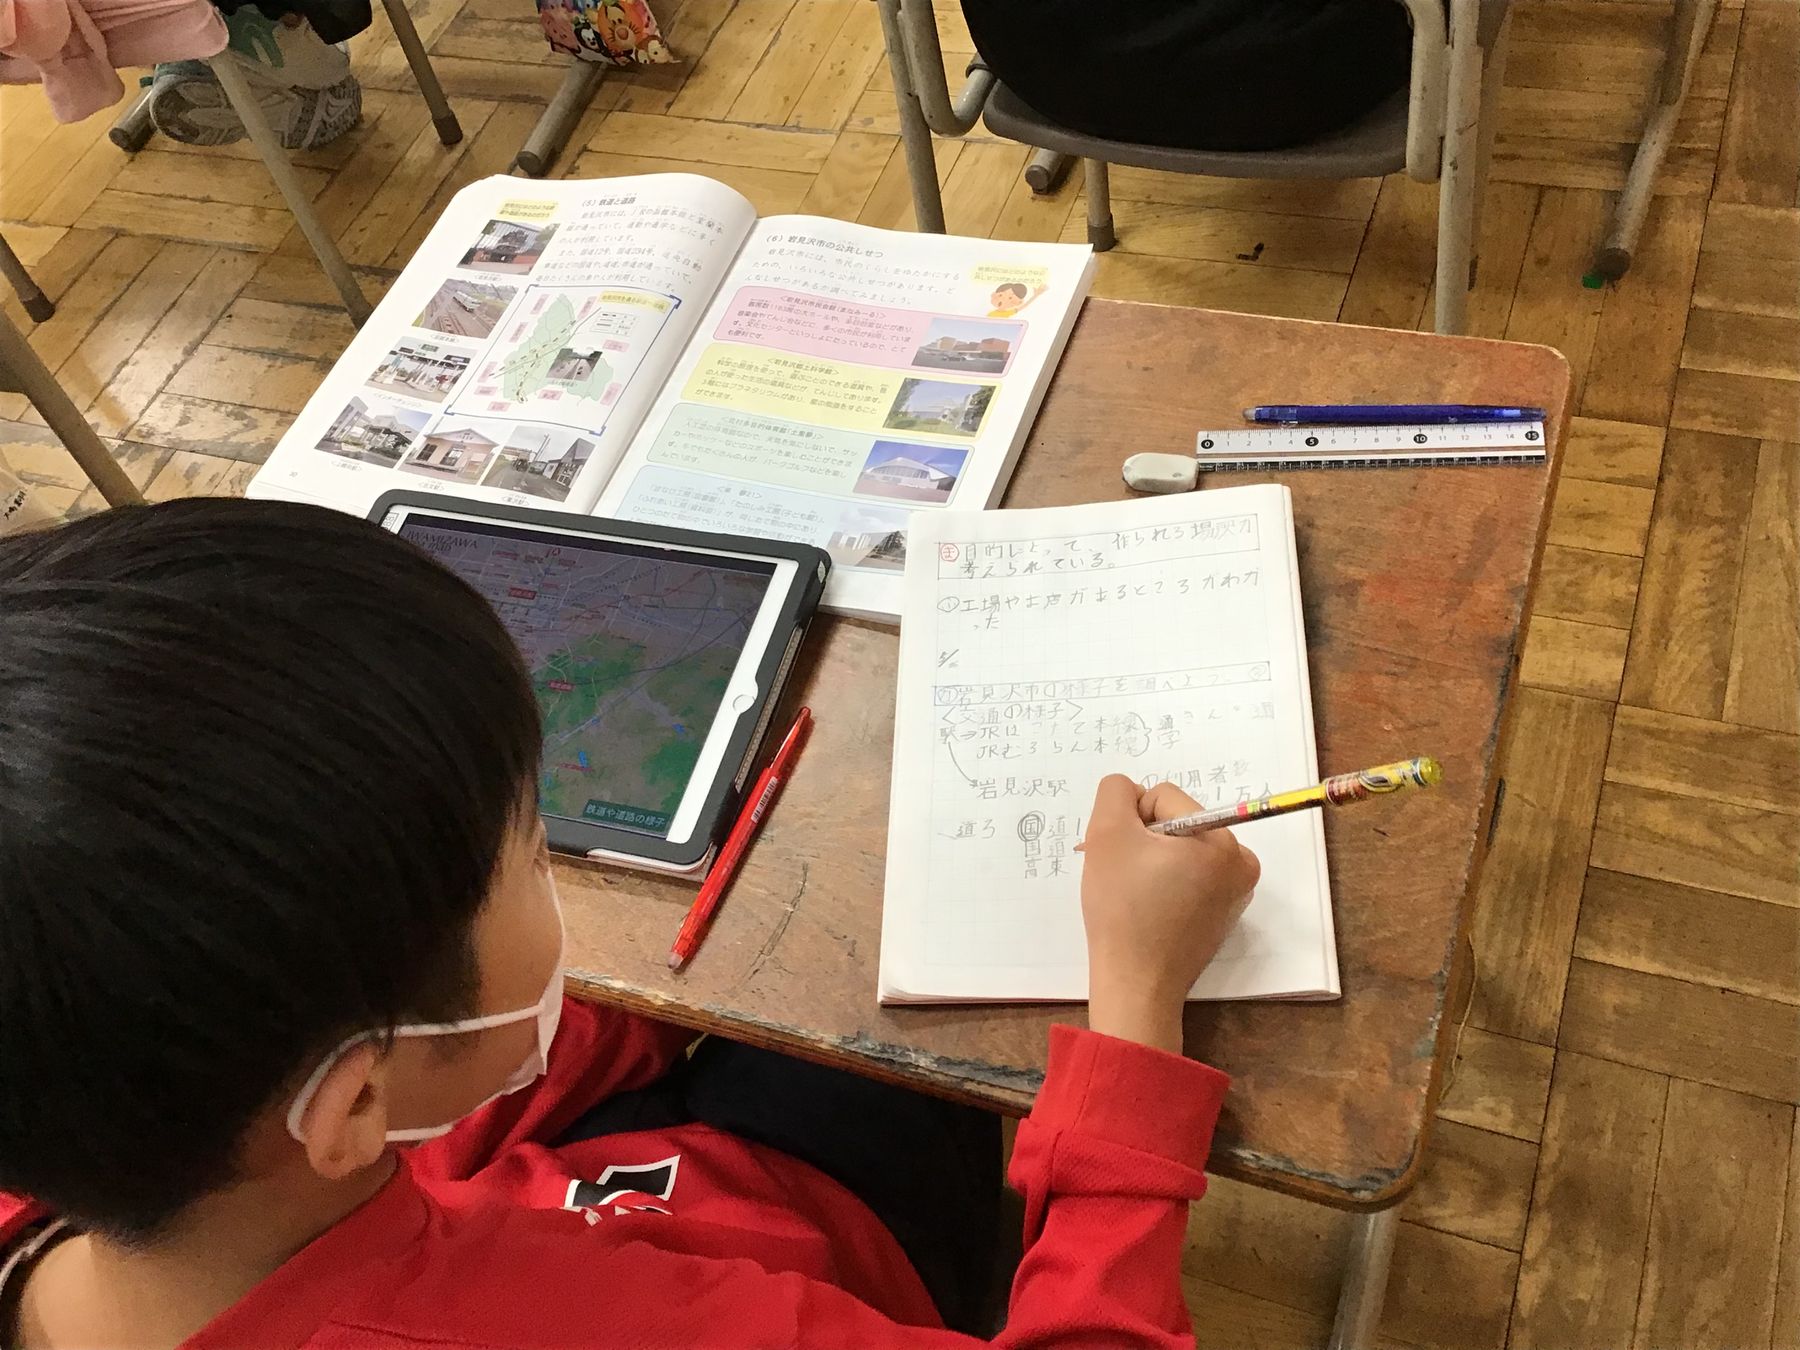 教室の机に向かいタブレット端末と教科書を見ながら、ノートに文字を書き込む男の子の写真